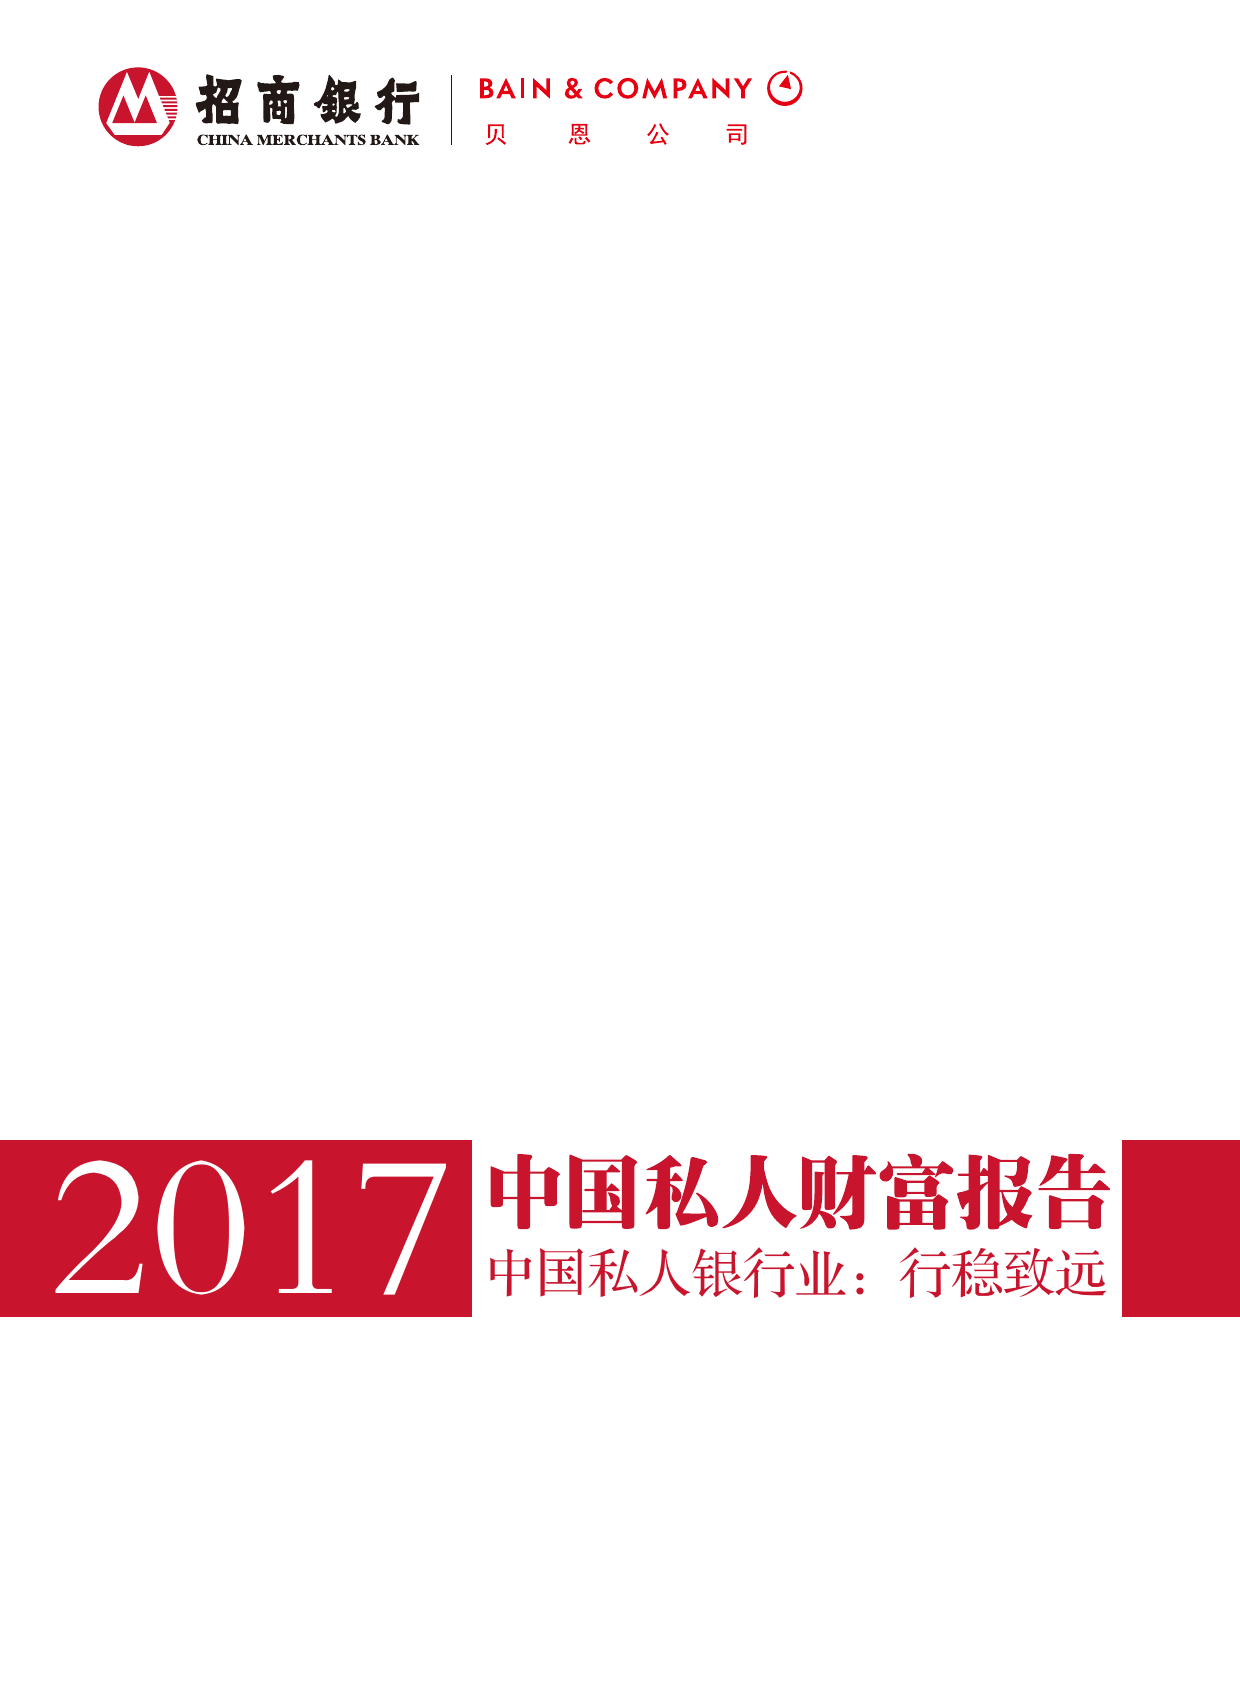 贝恩&招商银行:2017中国私人财富报告